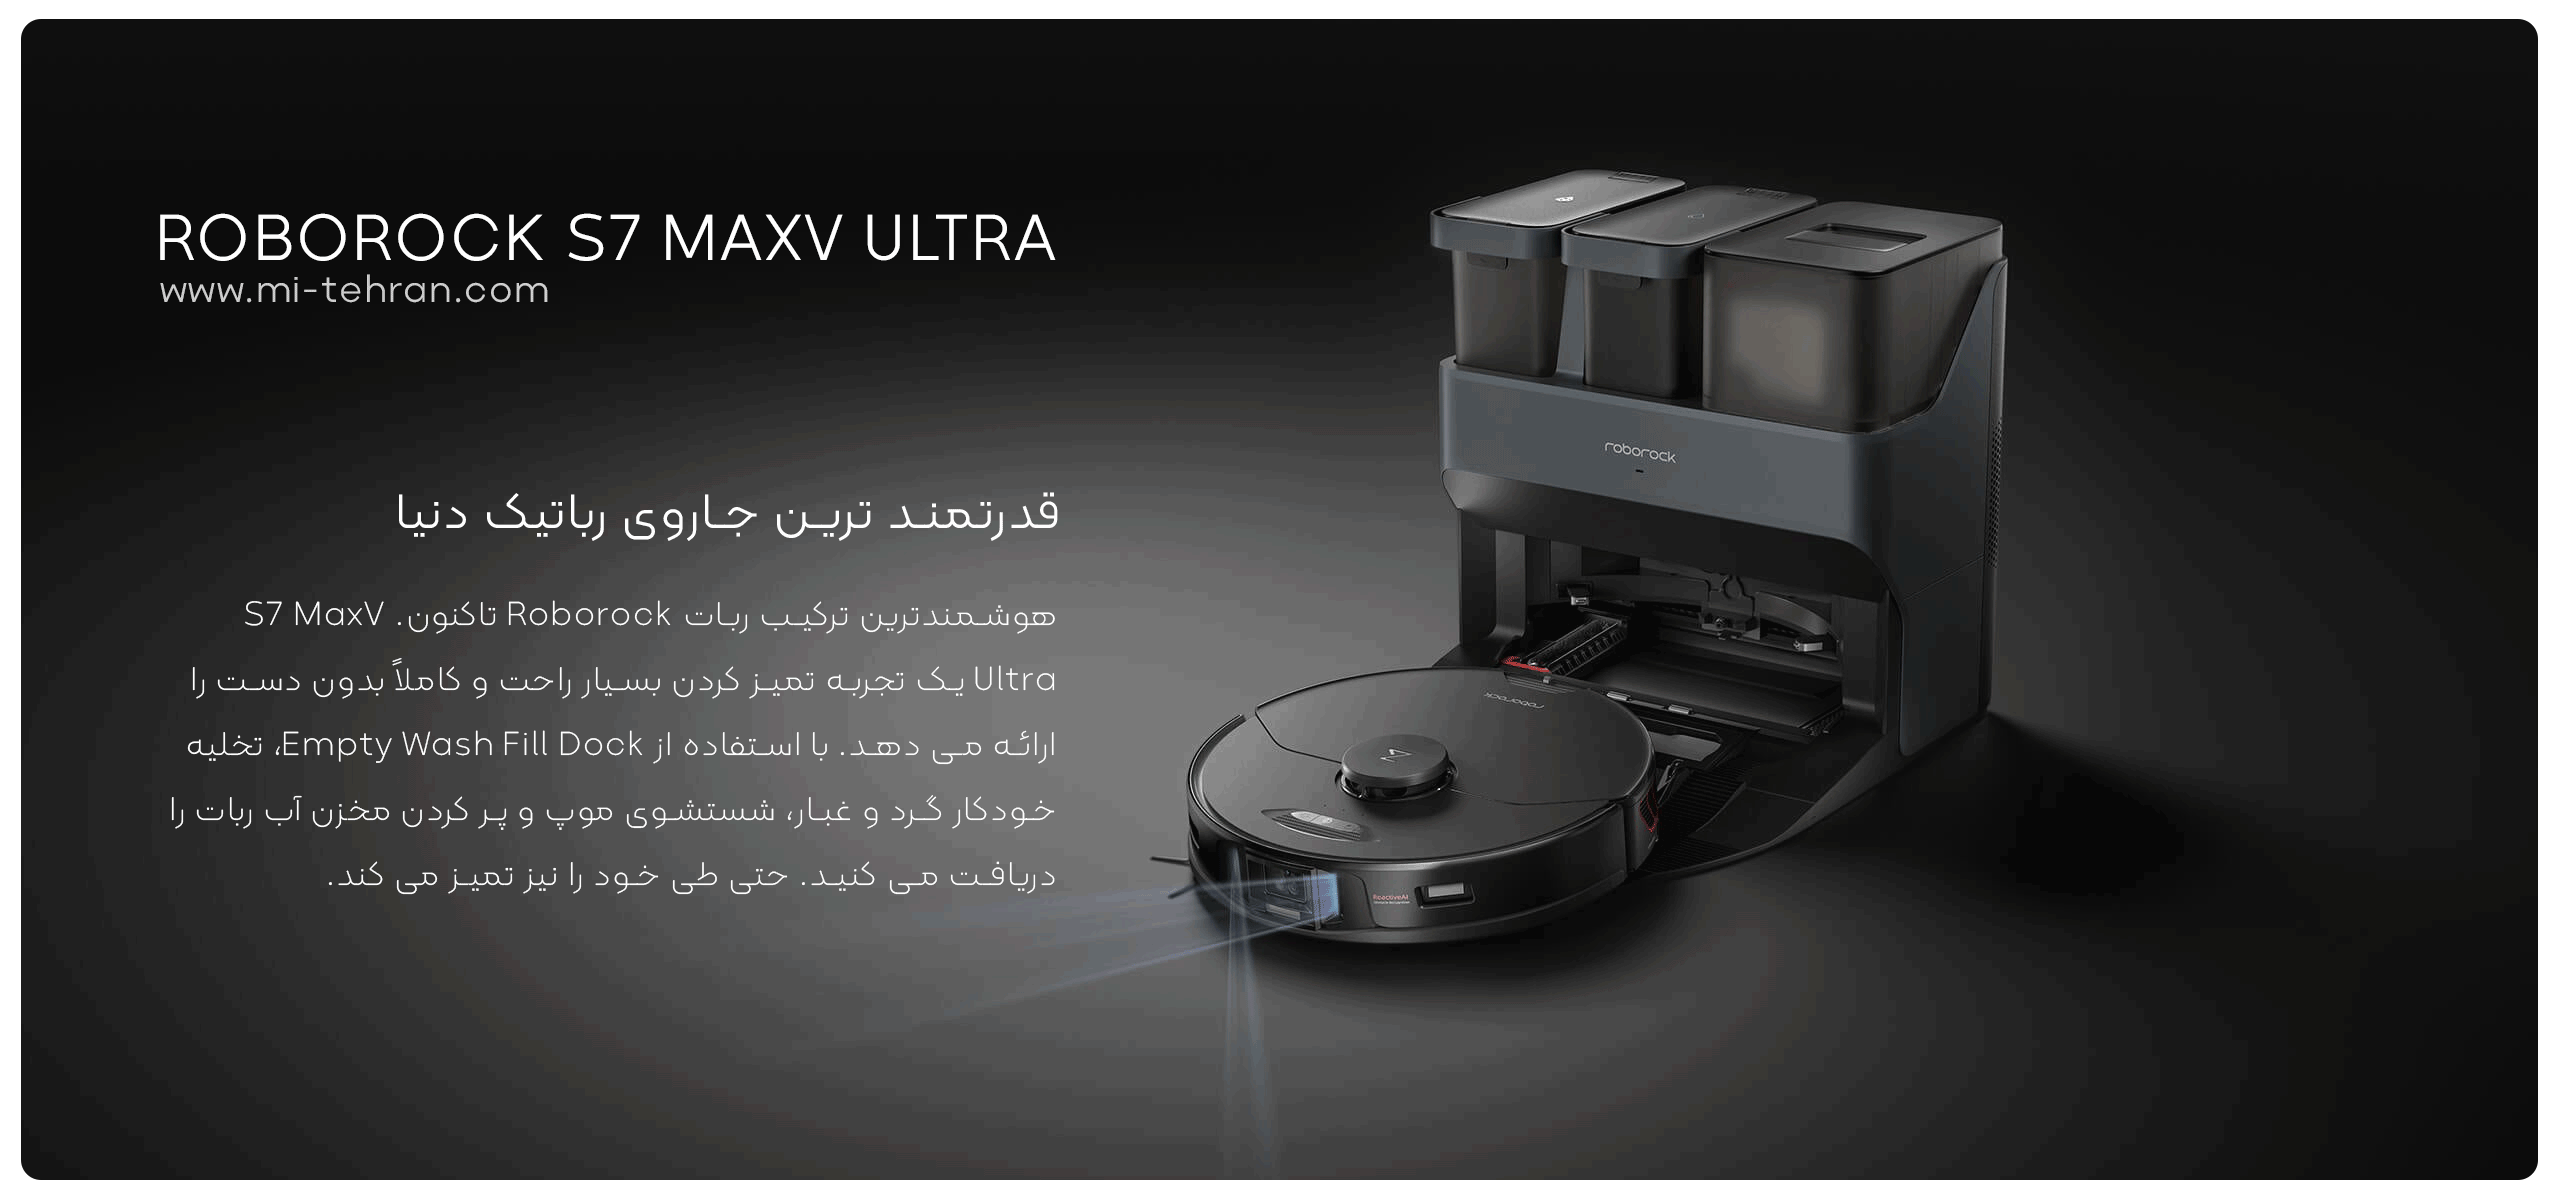 جارو رباتیک ROBOROCK S7 MAXV ULTRA